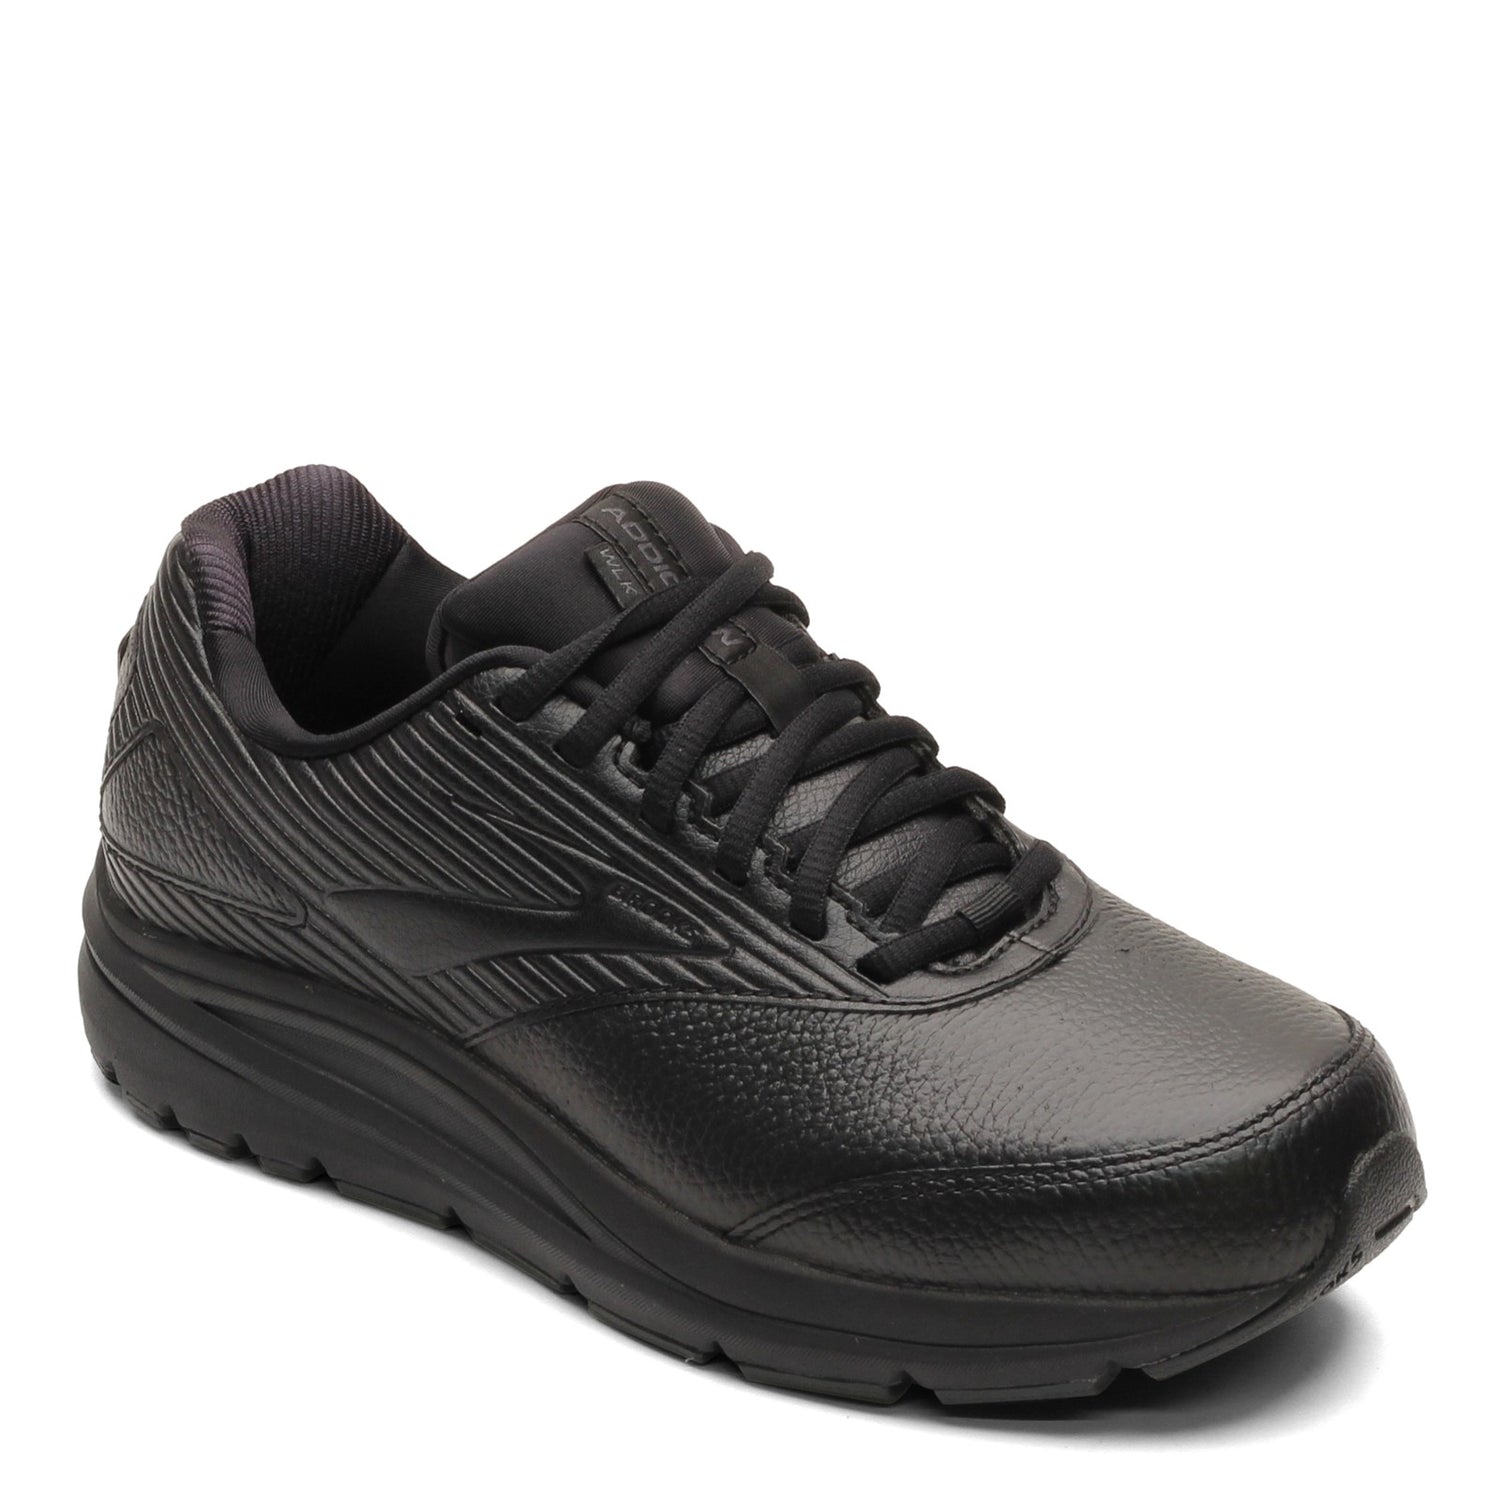 Peltz Shoes  Women's Brooks Addiction Walker 2 Walking Shoe - Narrow Width Black/Black 120307 2A 072